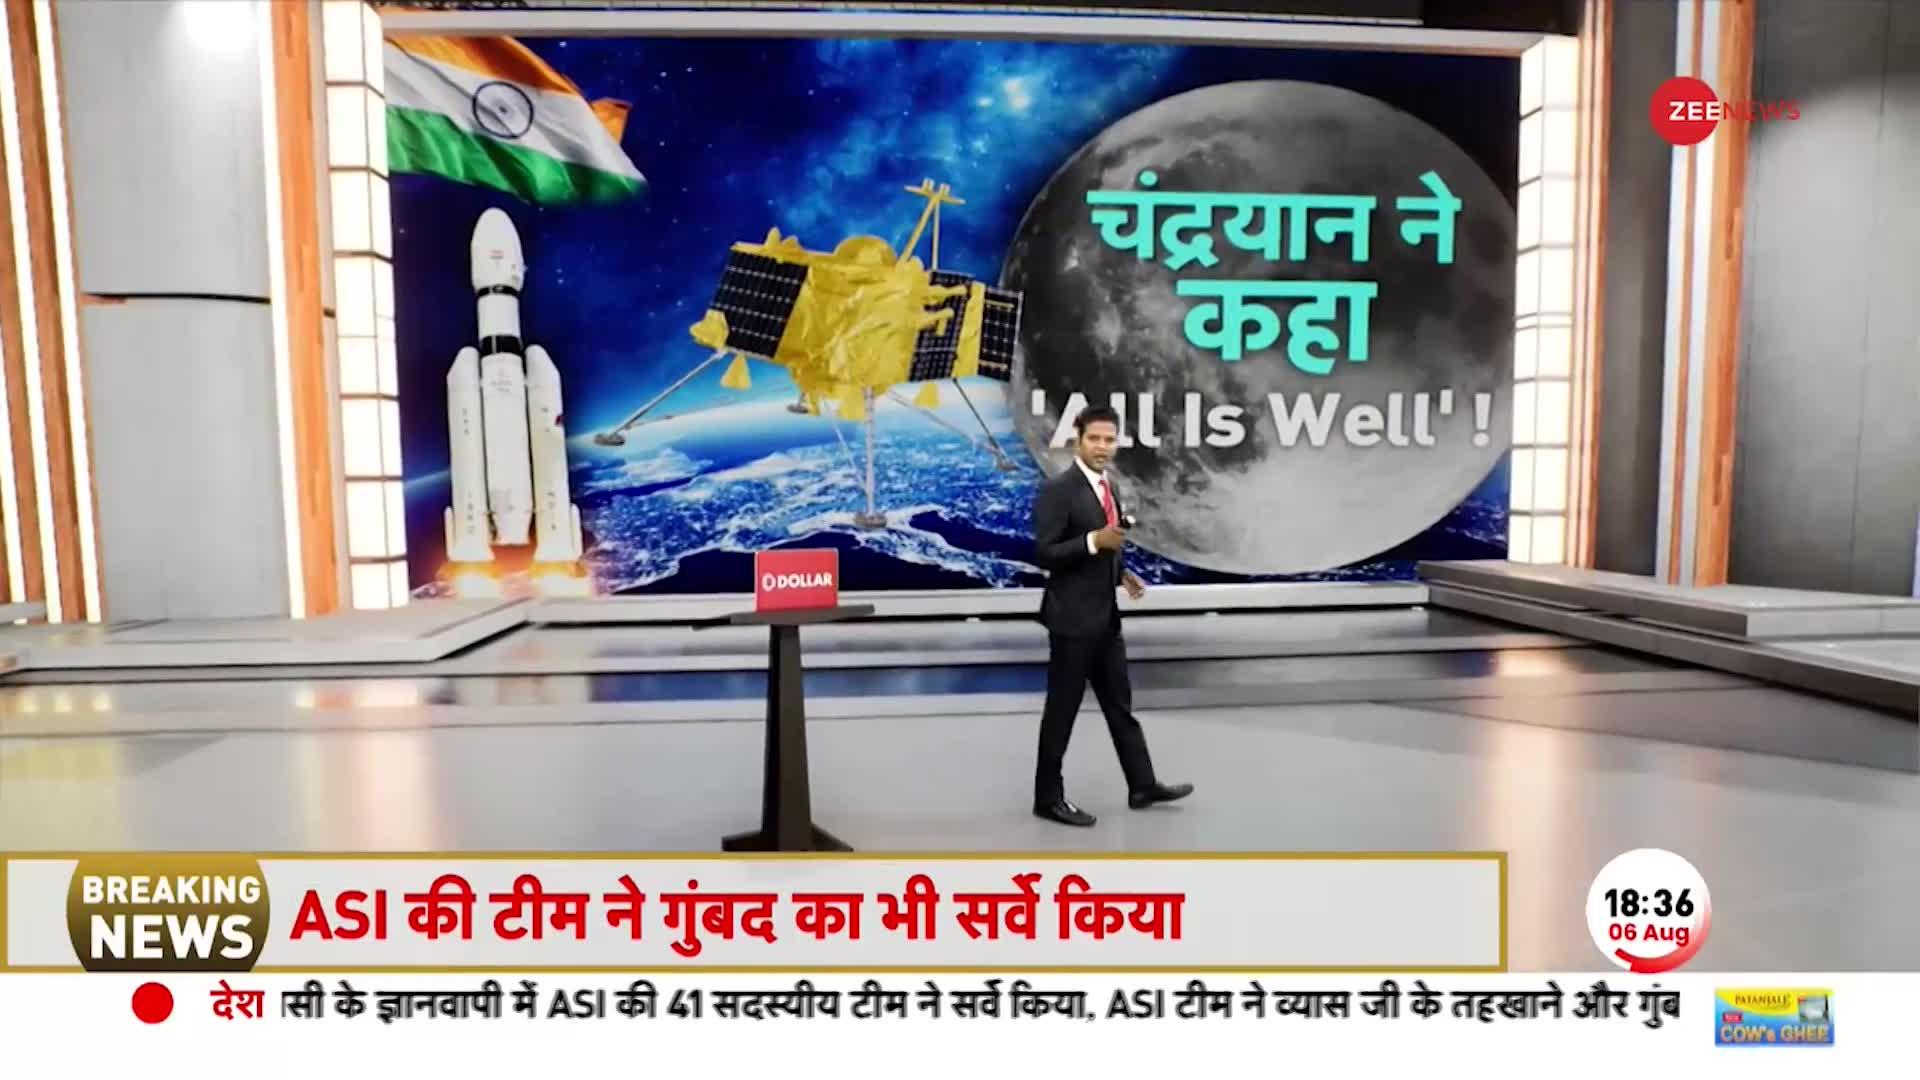 Deshhit: Chandrayaan-3 ने चाँद से भेजा ऐसा मैसेज, हिल गई पूरी दुनिया, पगलाए चीन-पाक!